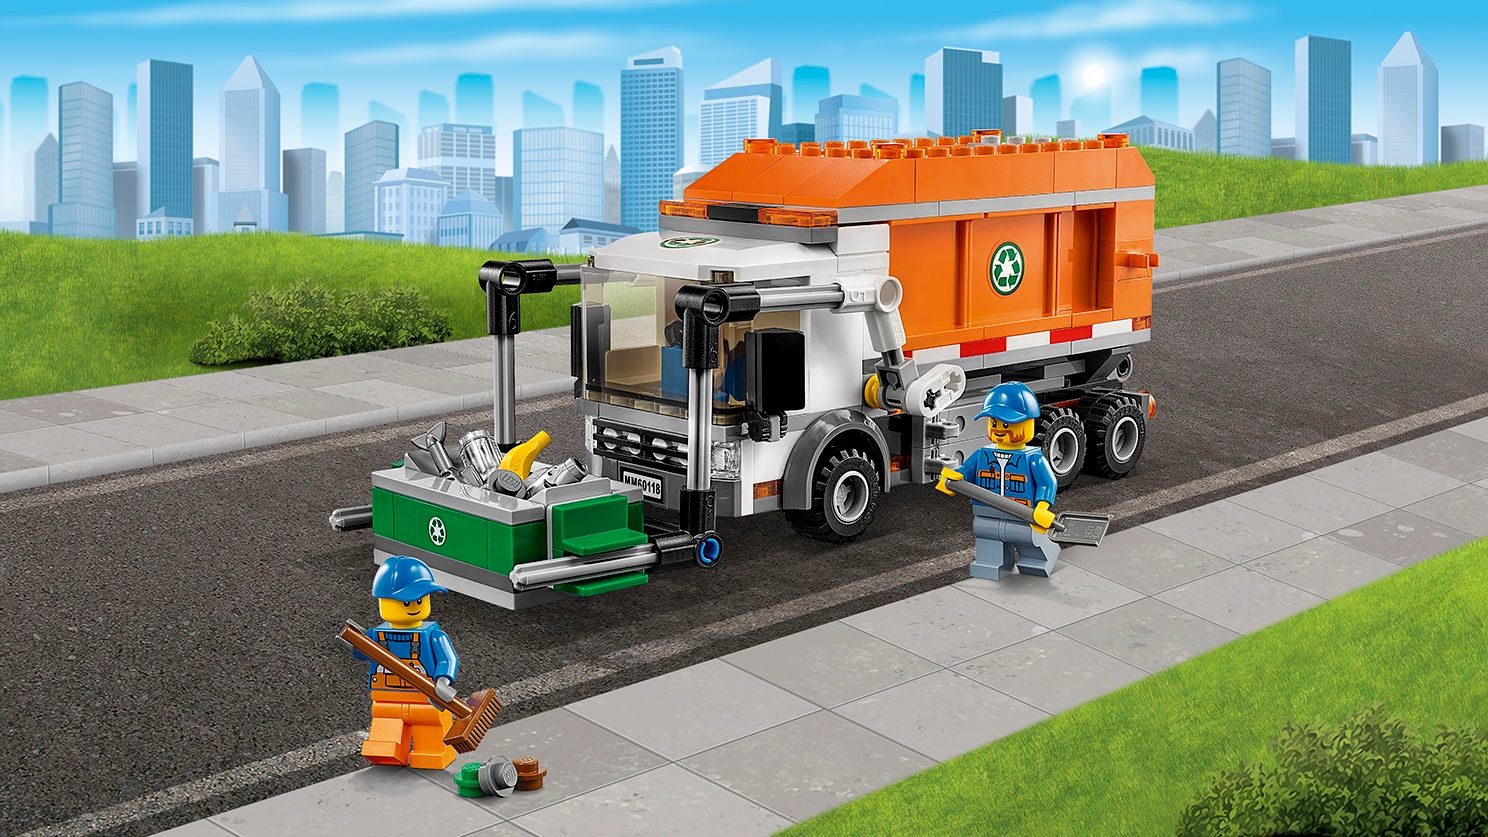 Superpojazdy LEGO City: śmieciarka, kontener i minifigurki — Śmieciarka 60118